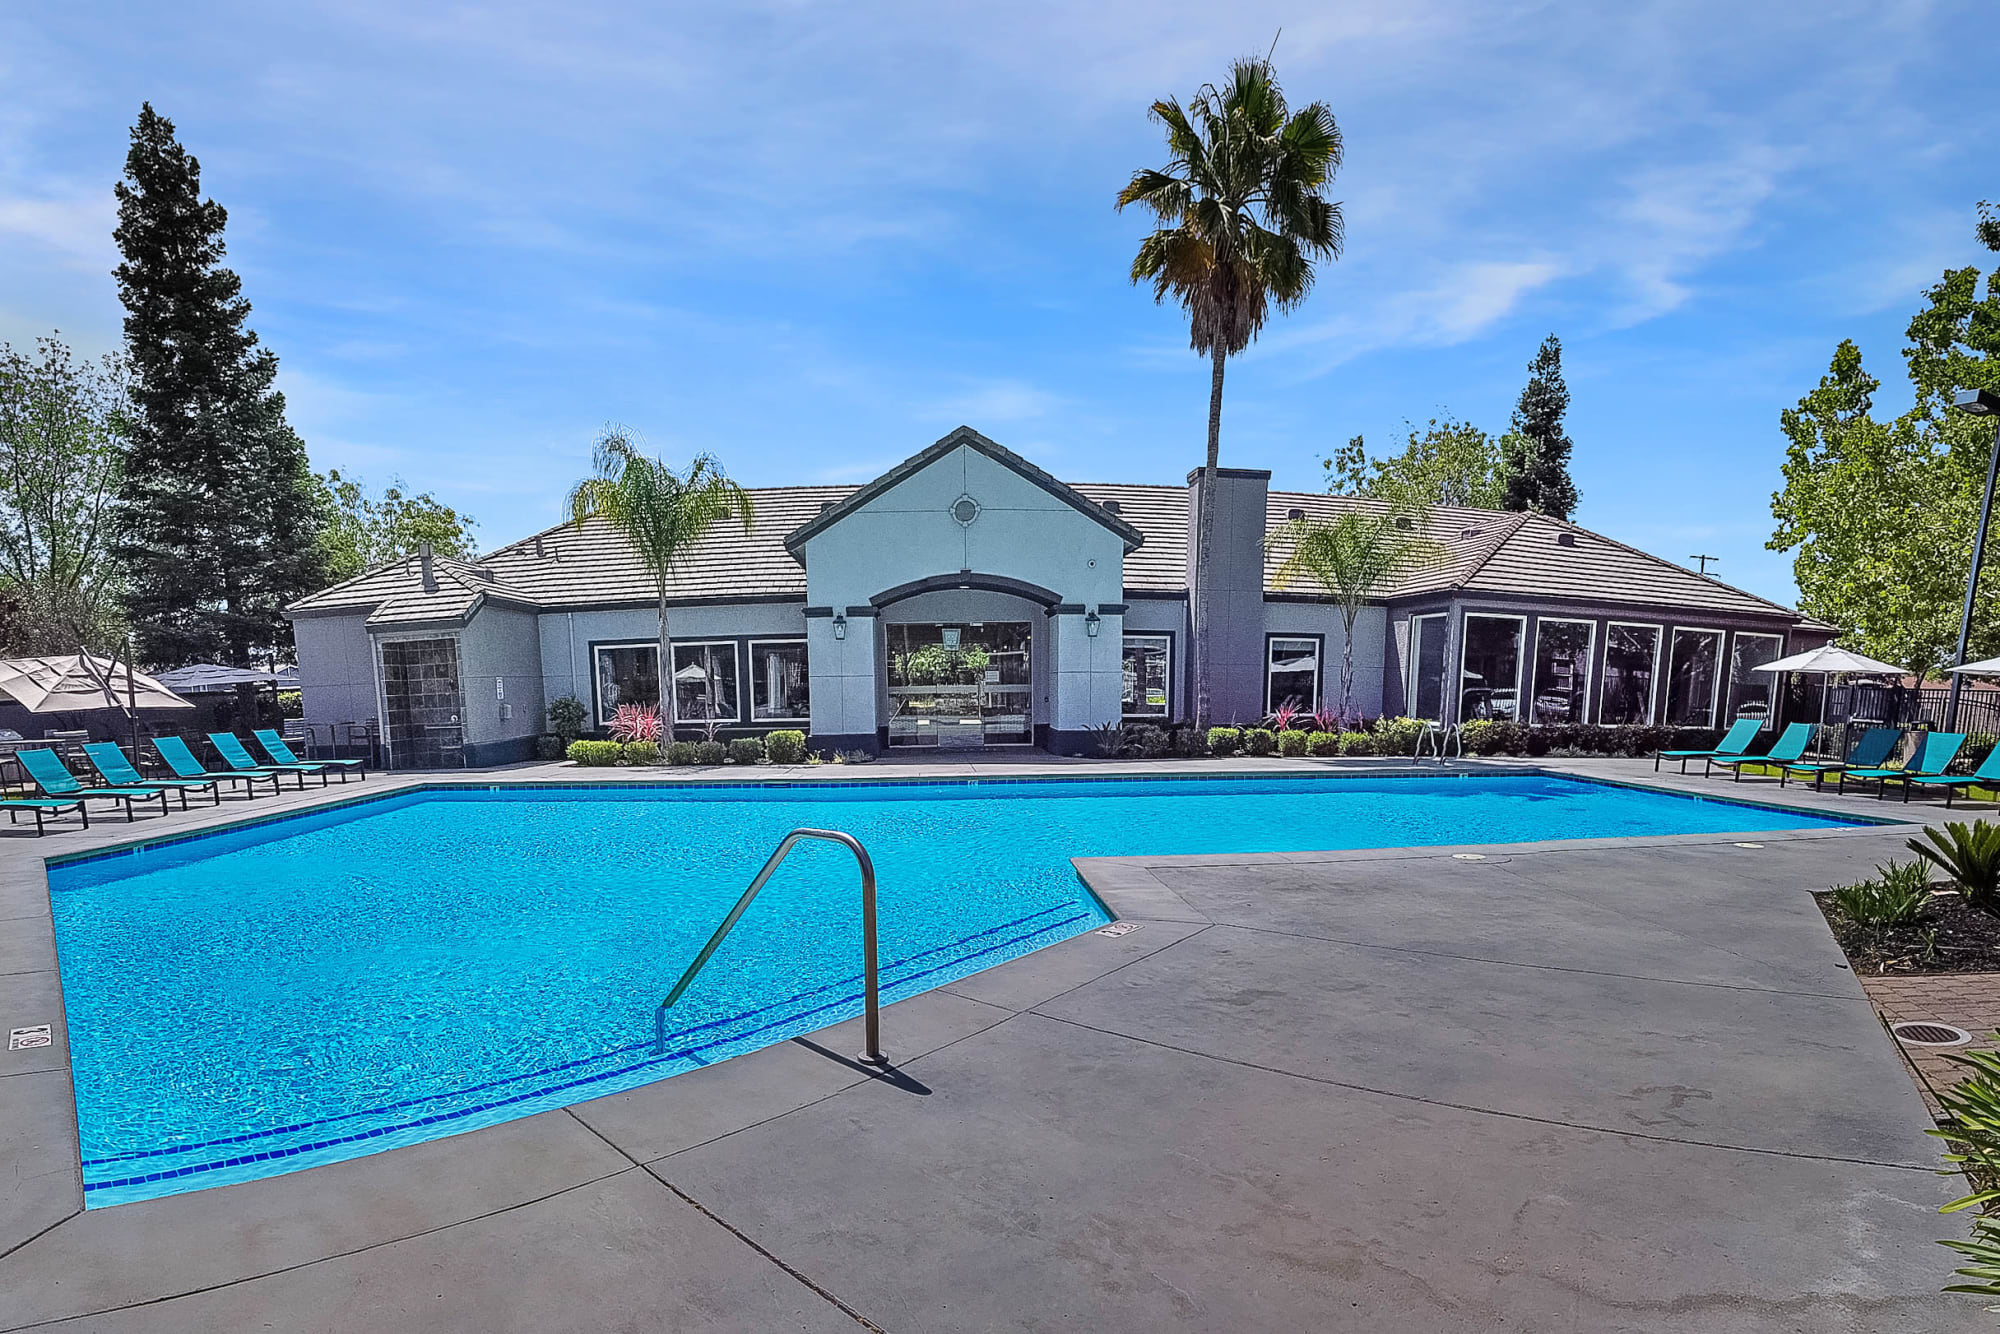 Swimming pool and patio seating at Avion Apartments in Rancho Cordova, California